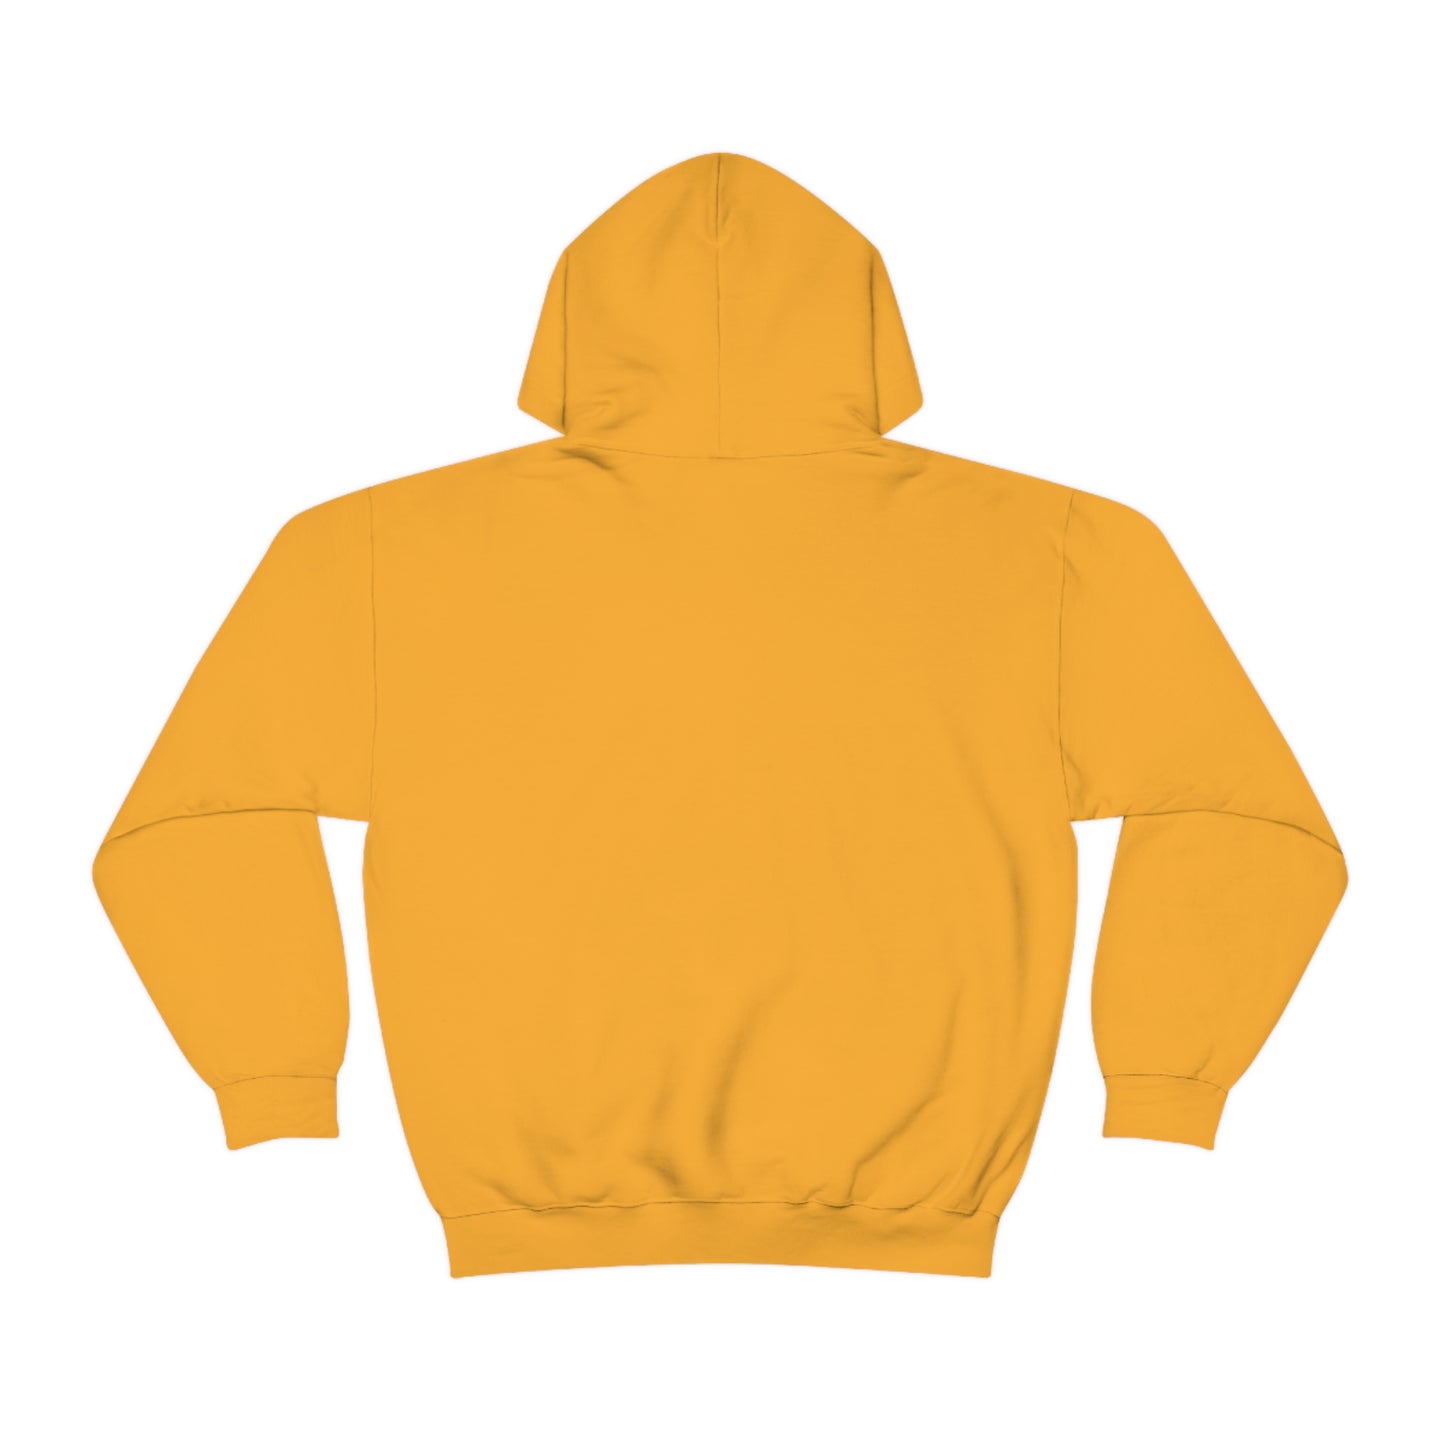 Inspire Wear Unisex Heavy Blend™ Hooded Sweatshirt